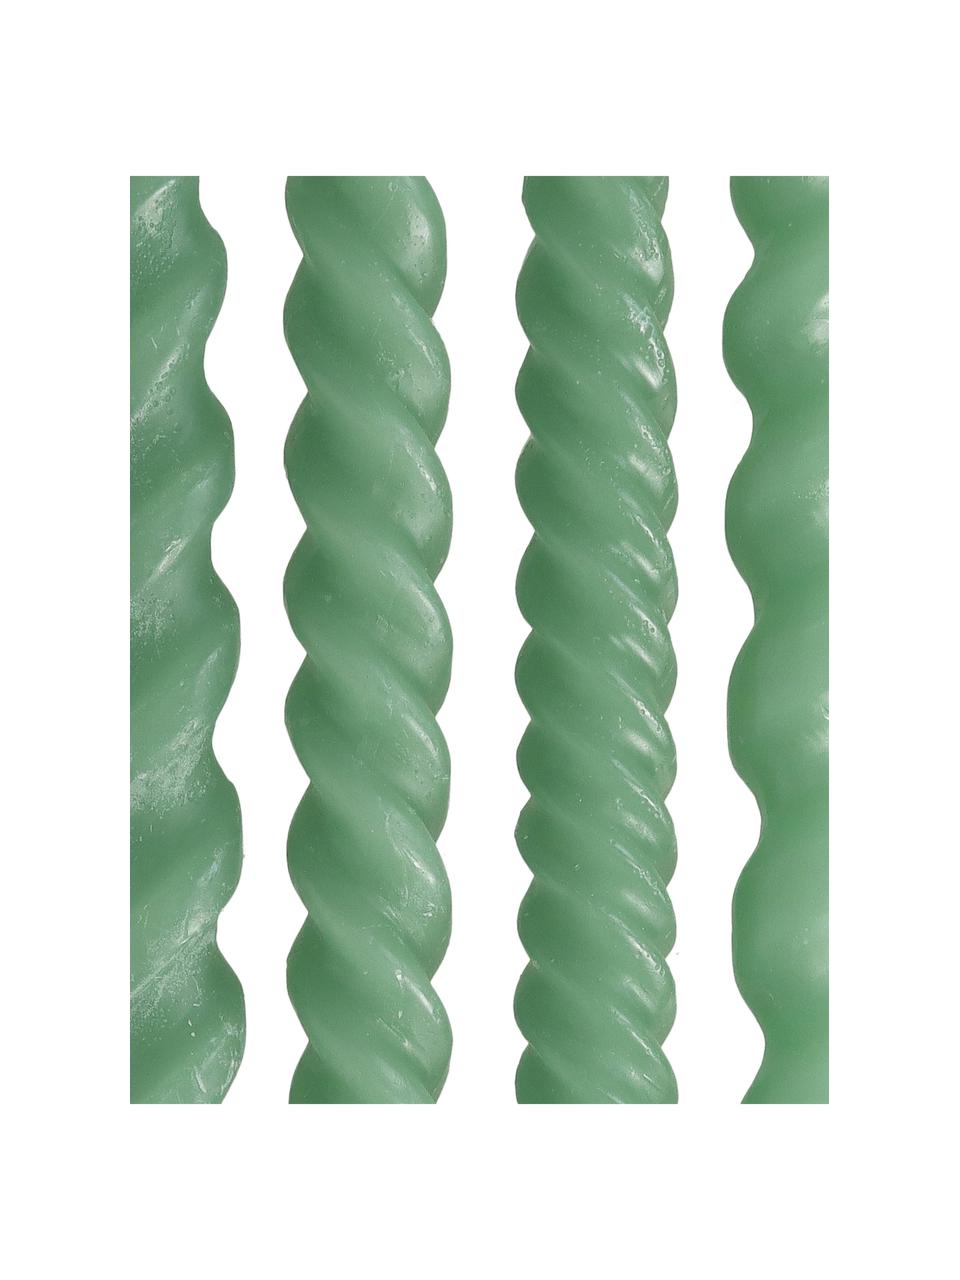 Stabkerzen Spiral, 4 Stück, Wachs, Grün, H 31 cm